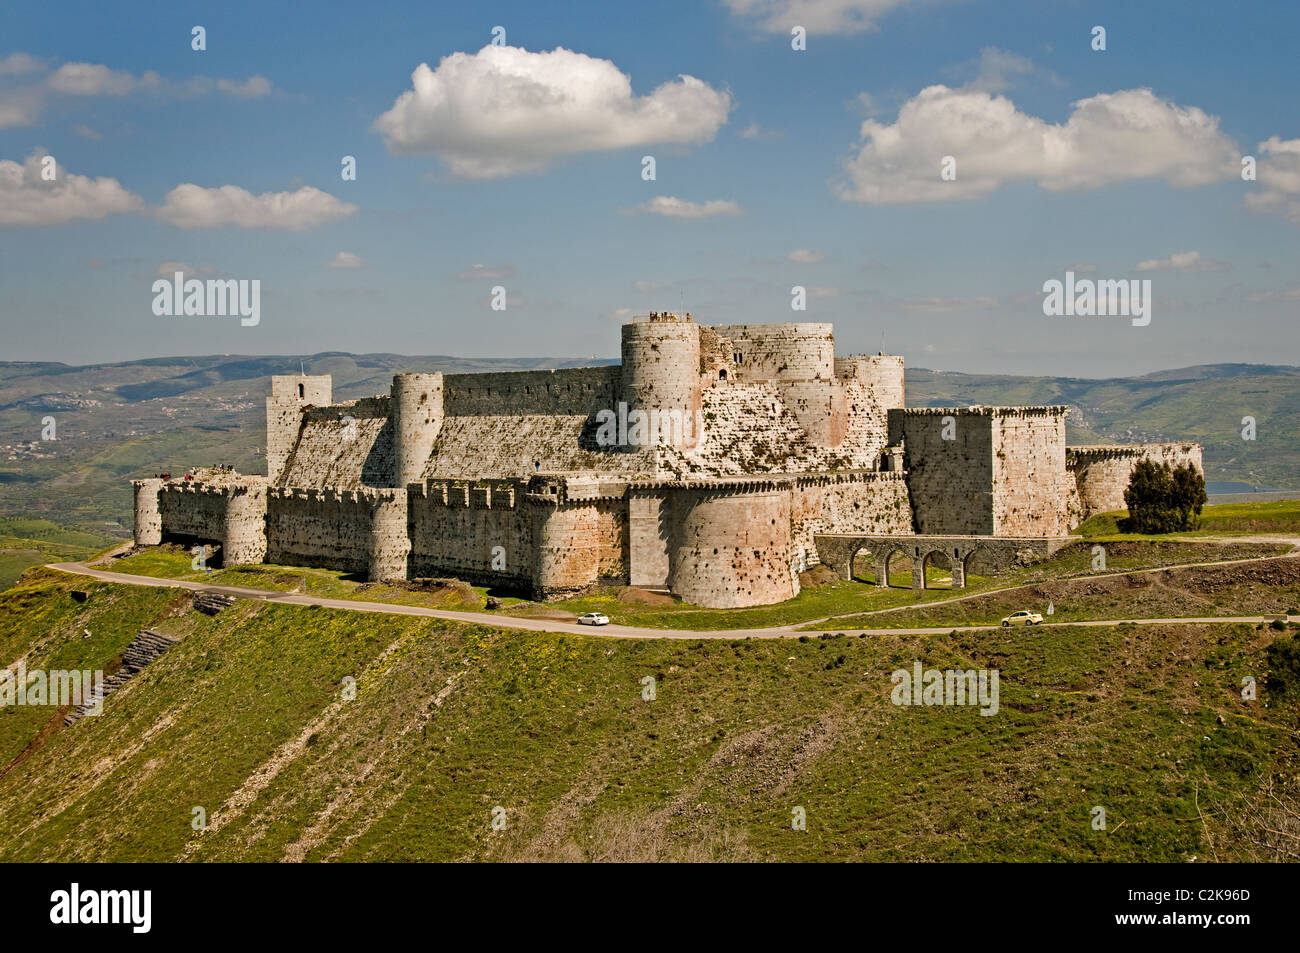 Siria Crac Krak des Chevaliers castillo medieval de los Caballeros o Quala'at al-Hosn cruzados cerca de Homs Foto de stock